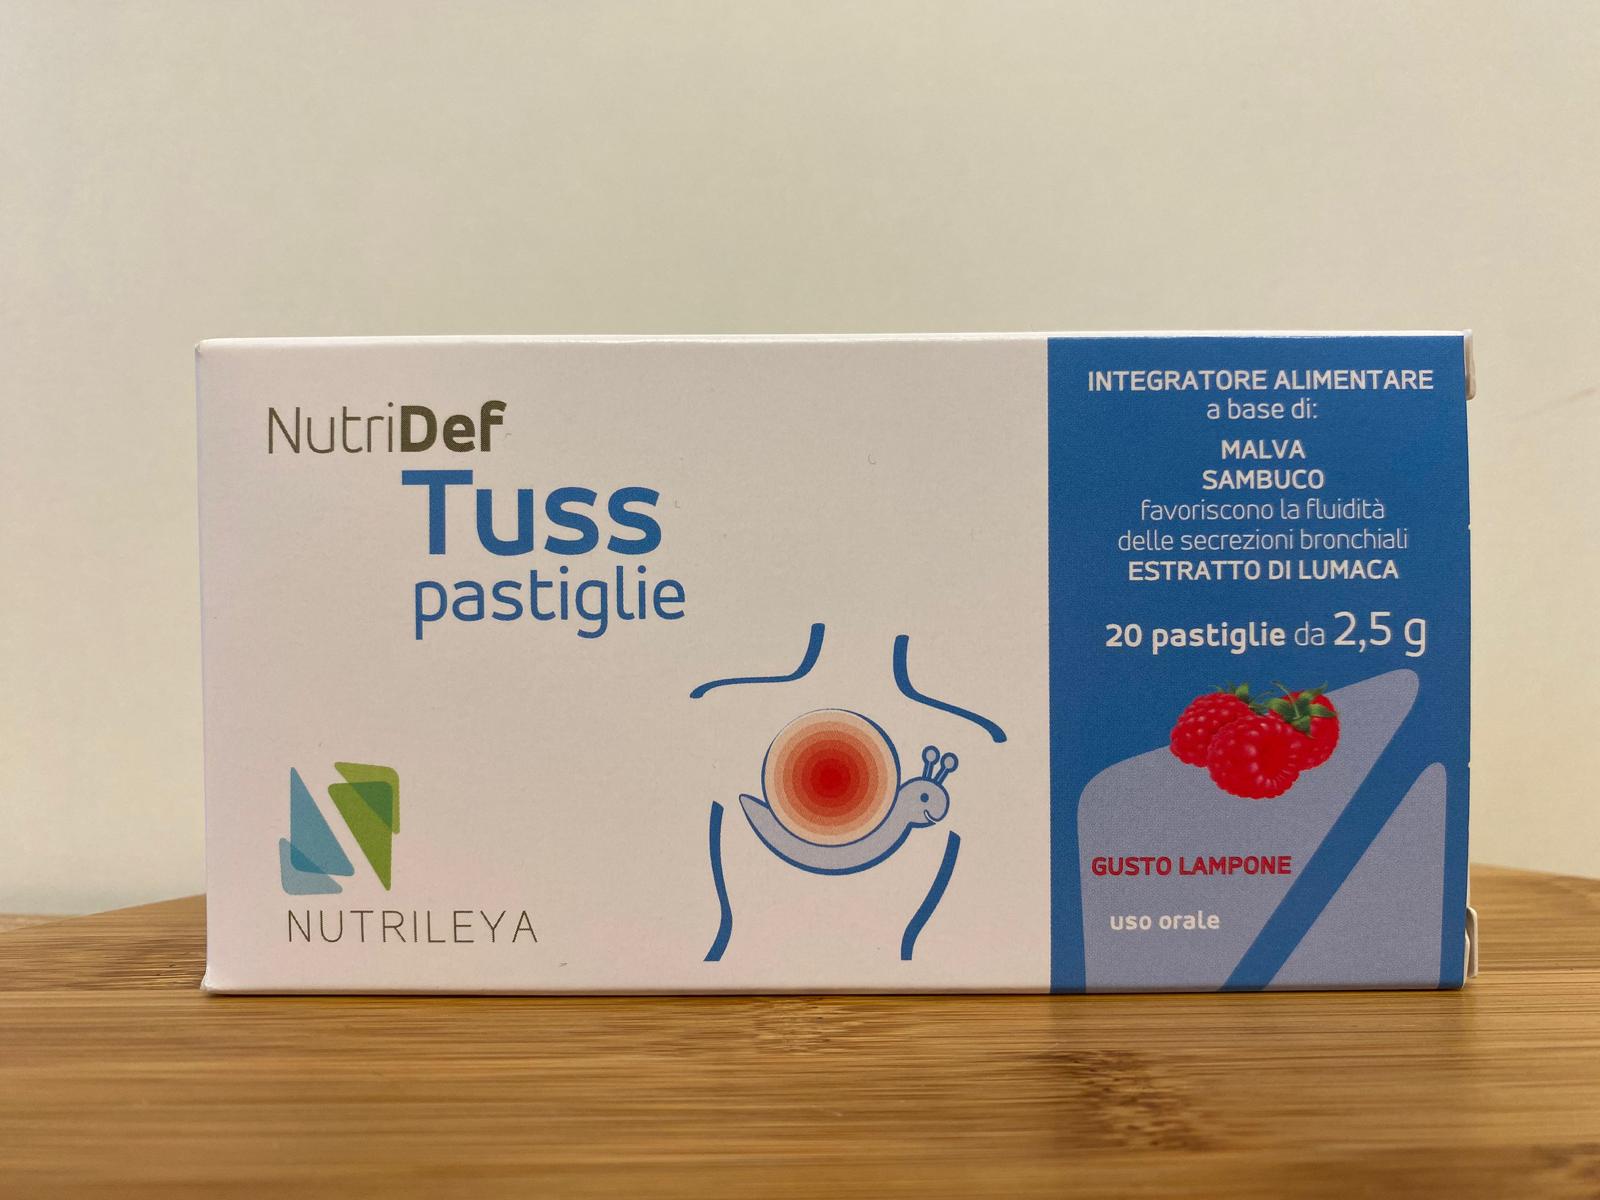 Nutrileya: NutriDef Tuss pastiglie